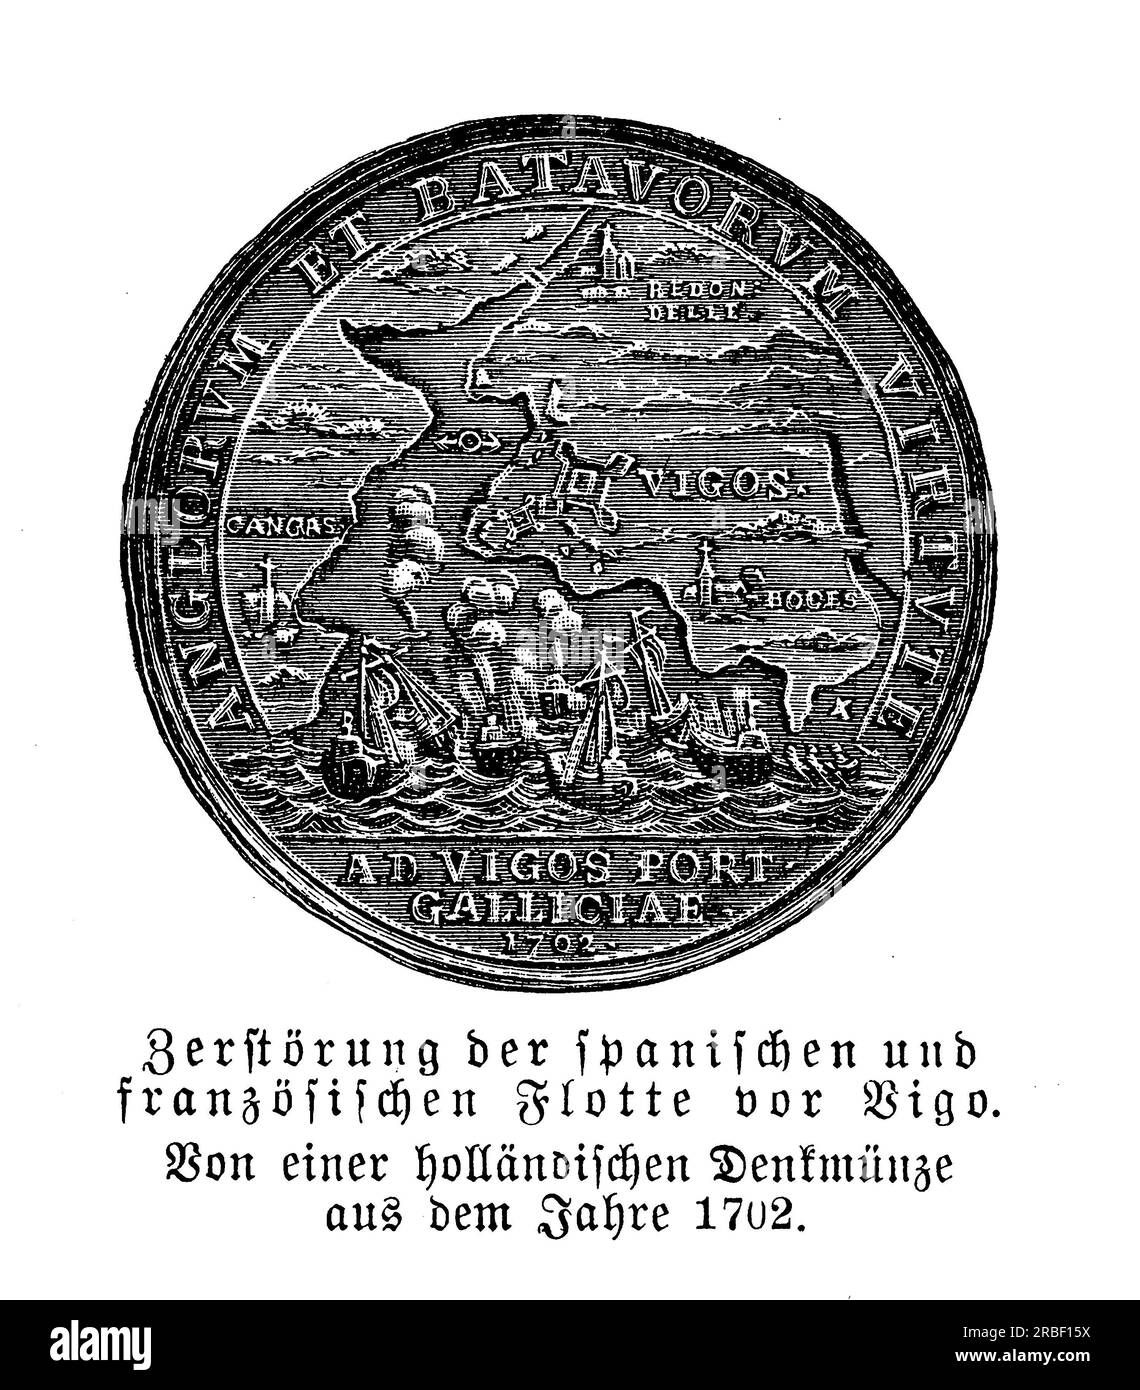 Médaille comemmorative hollandaise de la bataille de la baie de Vigo,1702, également connue sous le nom de bataille de Rande en Galice, engagement naval pendant la guerre de succession d'Espagne avec la défaite de la flotte hispano-française Banque D'Images